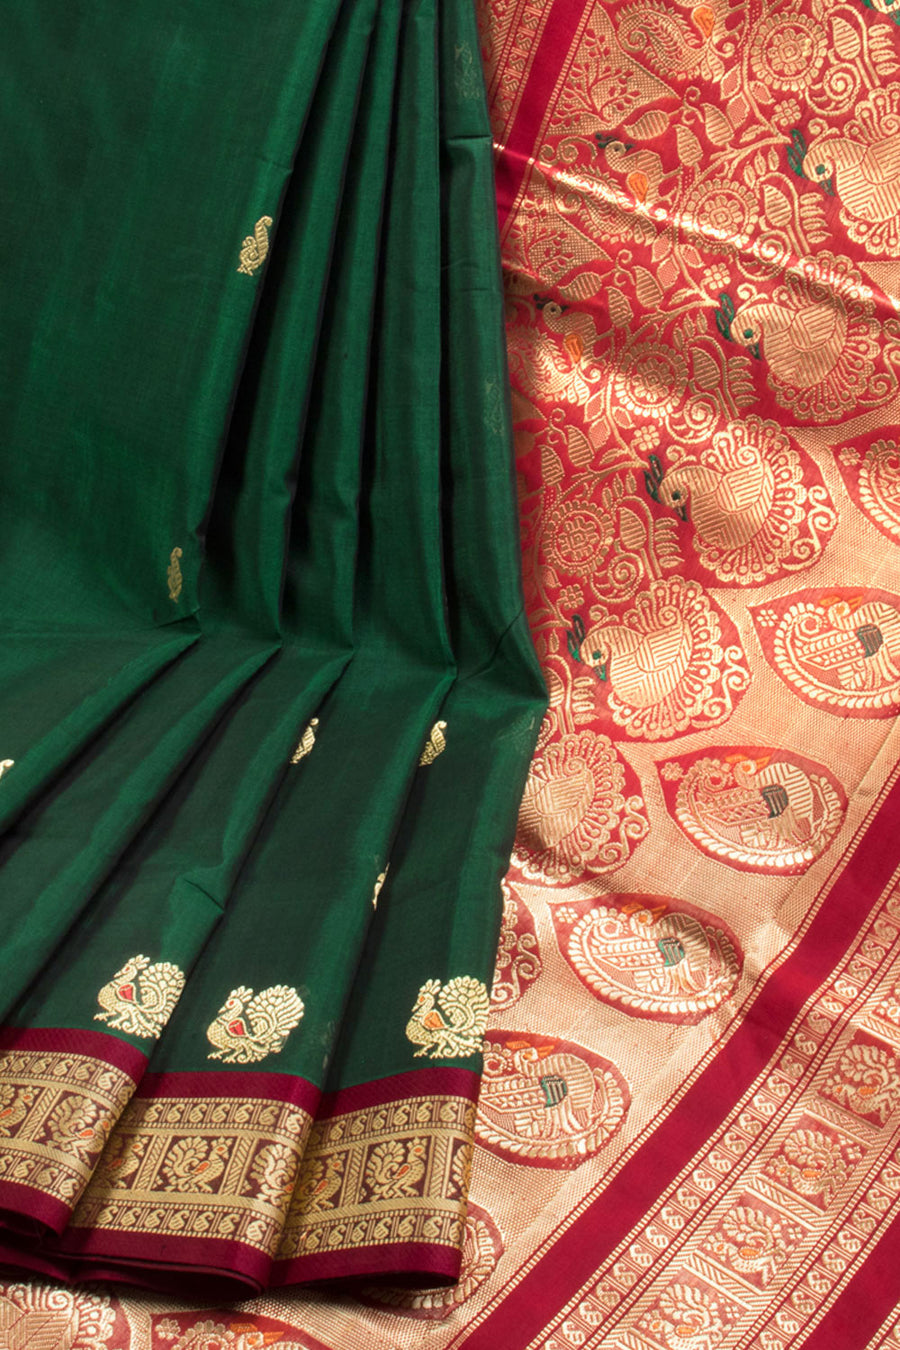 Green Madurai Silk Cotton Saree 10069890 - Avishya